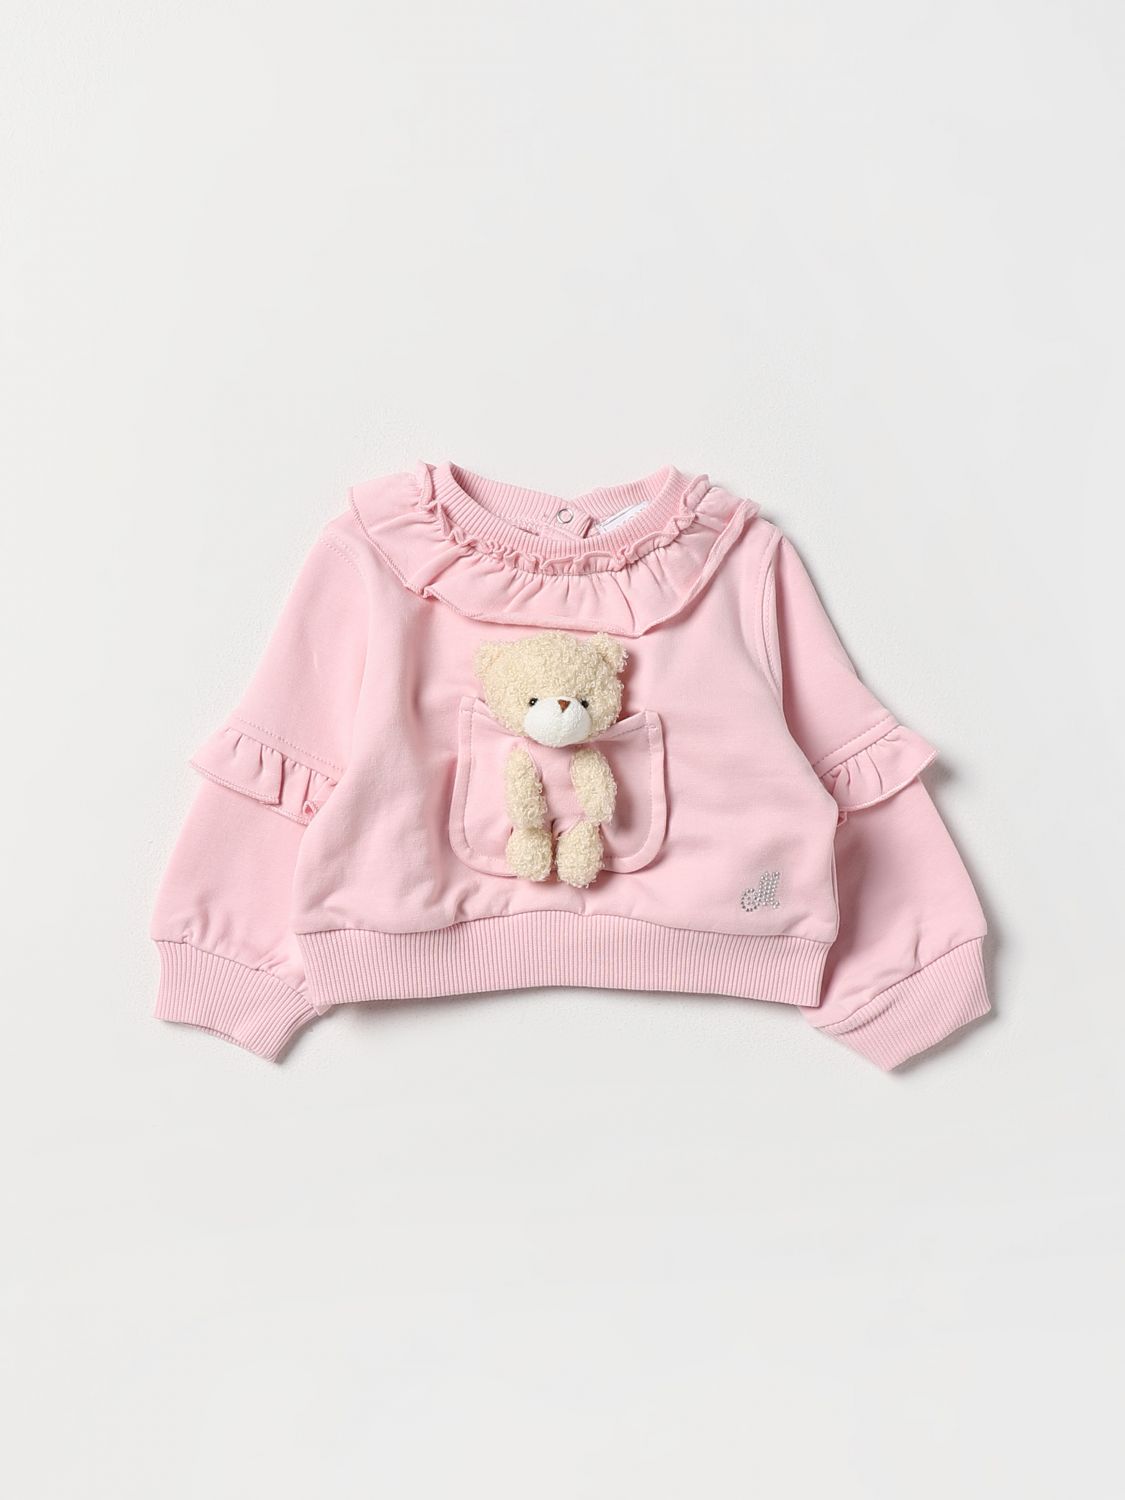 Monnalisa Babies' Pullover  Kinder Farbe Pink